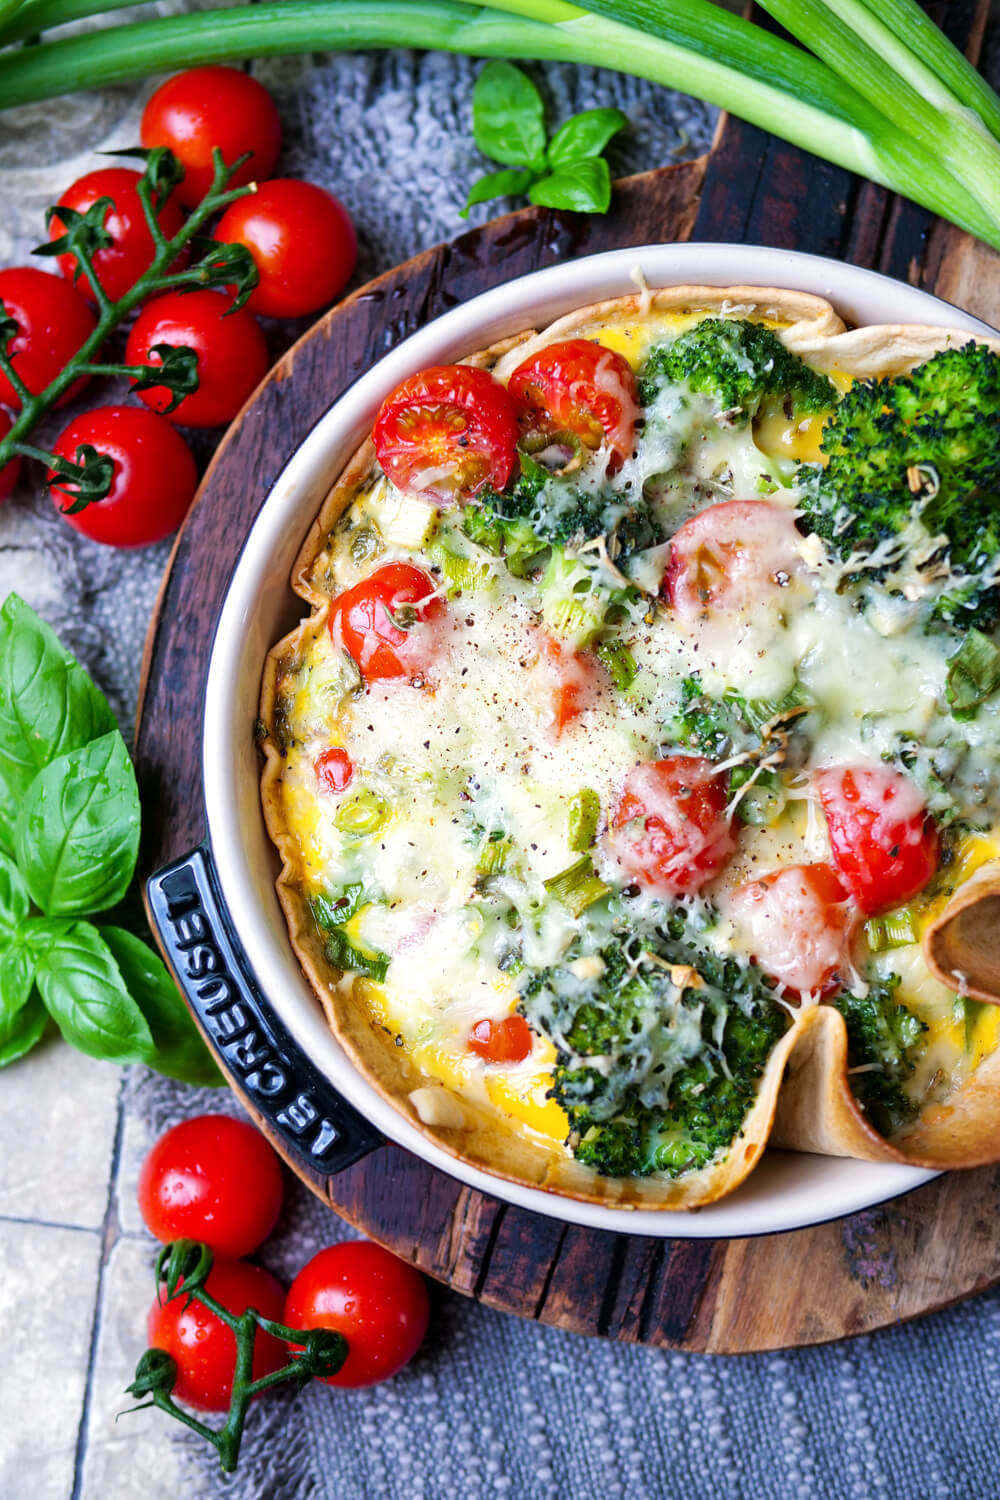 Wrap-Quiche mit Brokkoli, Tomaten und Käse überbacken